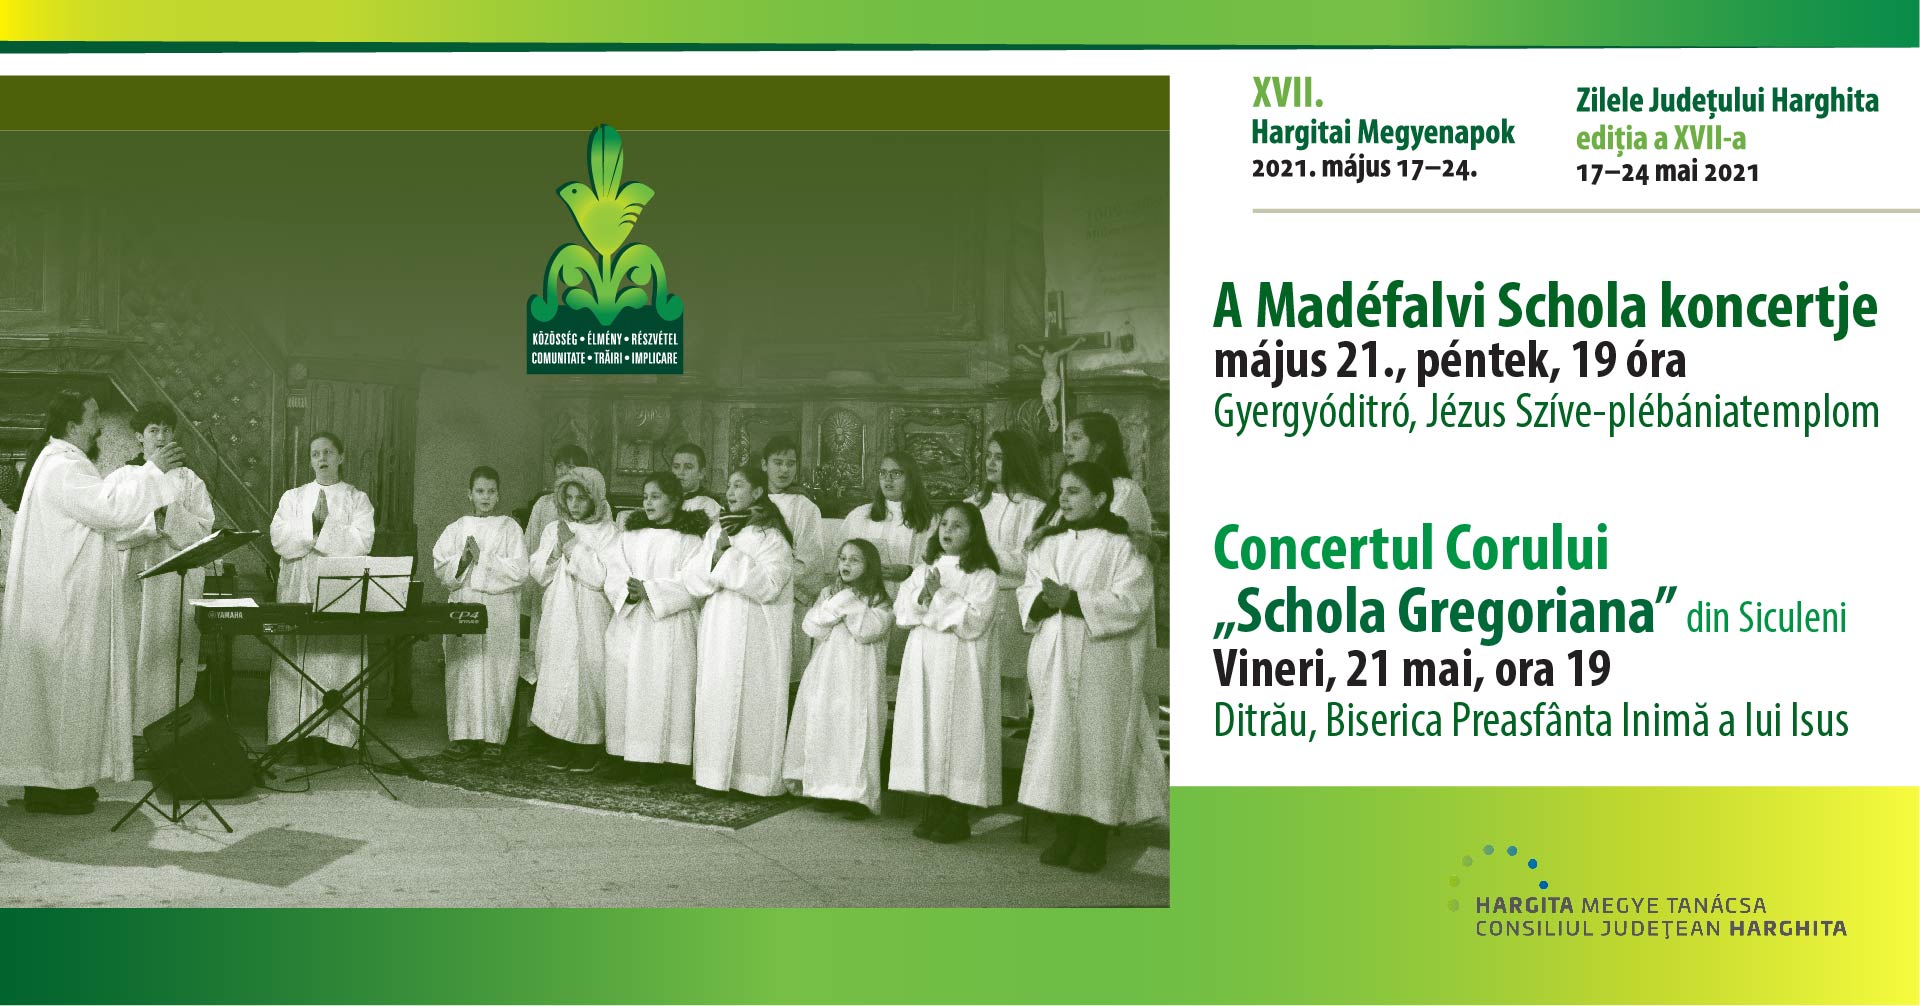 Concertul Corului Schola Gregoriana din Siculeni